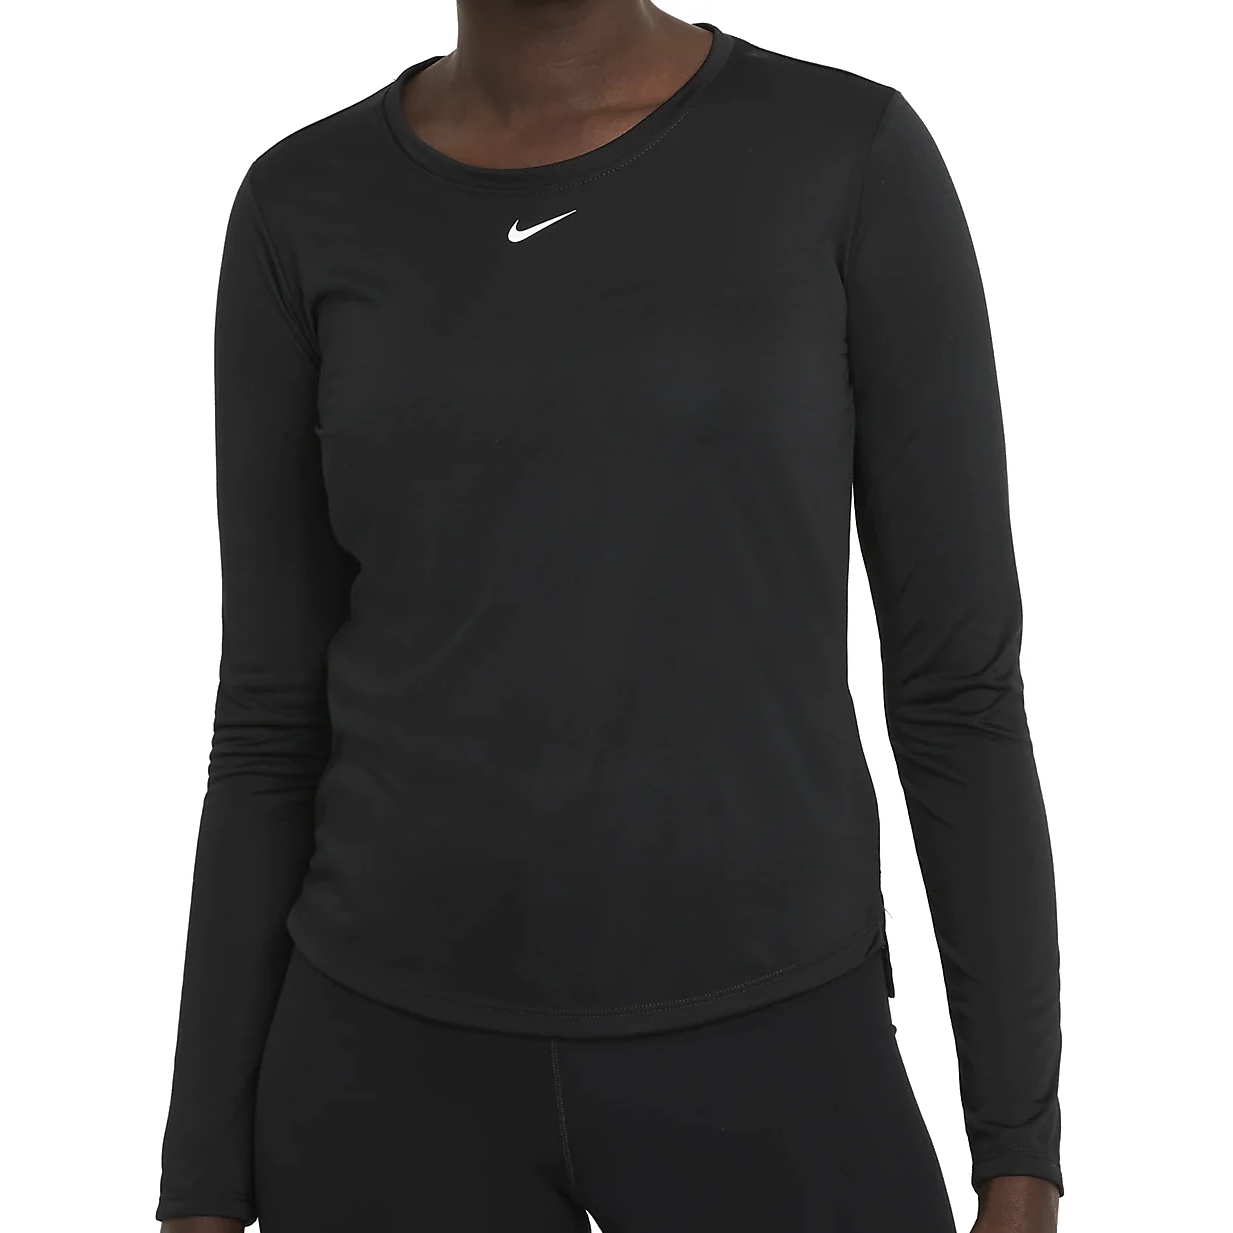 Produktbild von Nike Dri-Fit One Standard Fit Damen Langarmshirt - schwarz/weiß DD0641-010